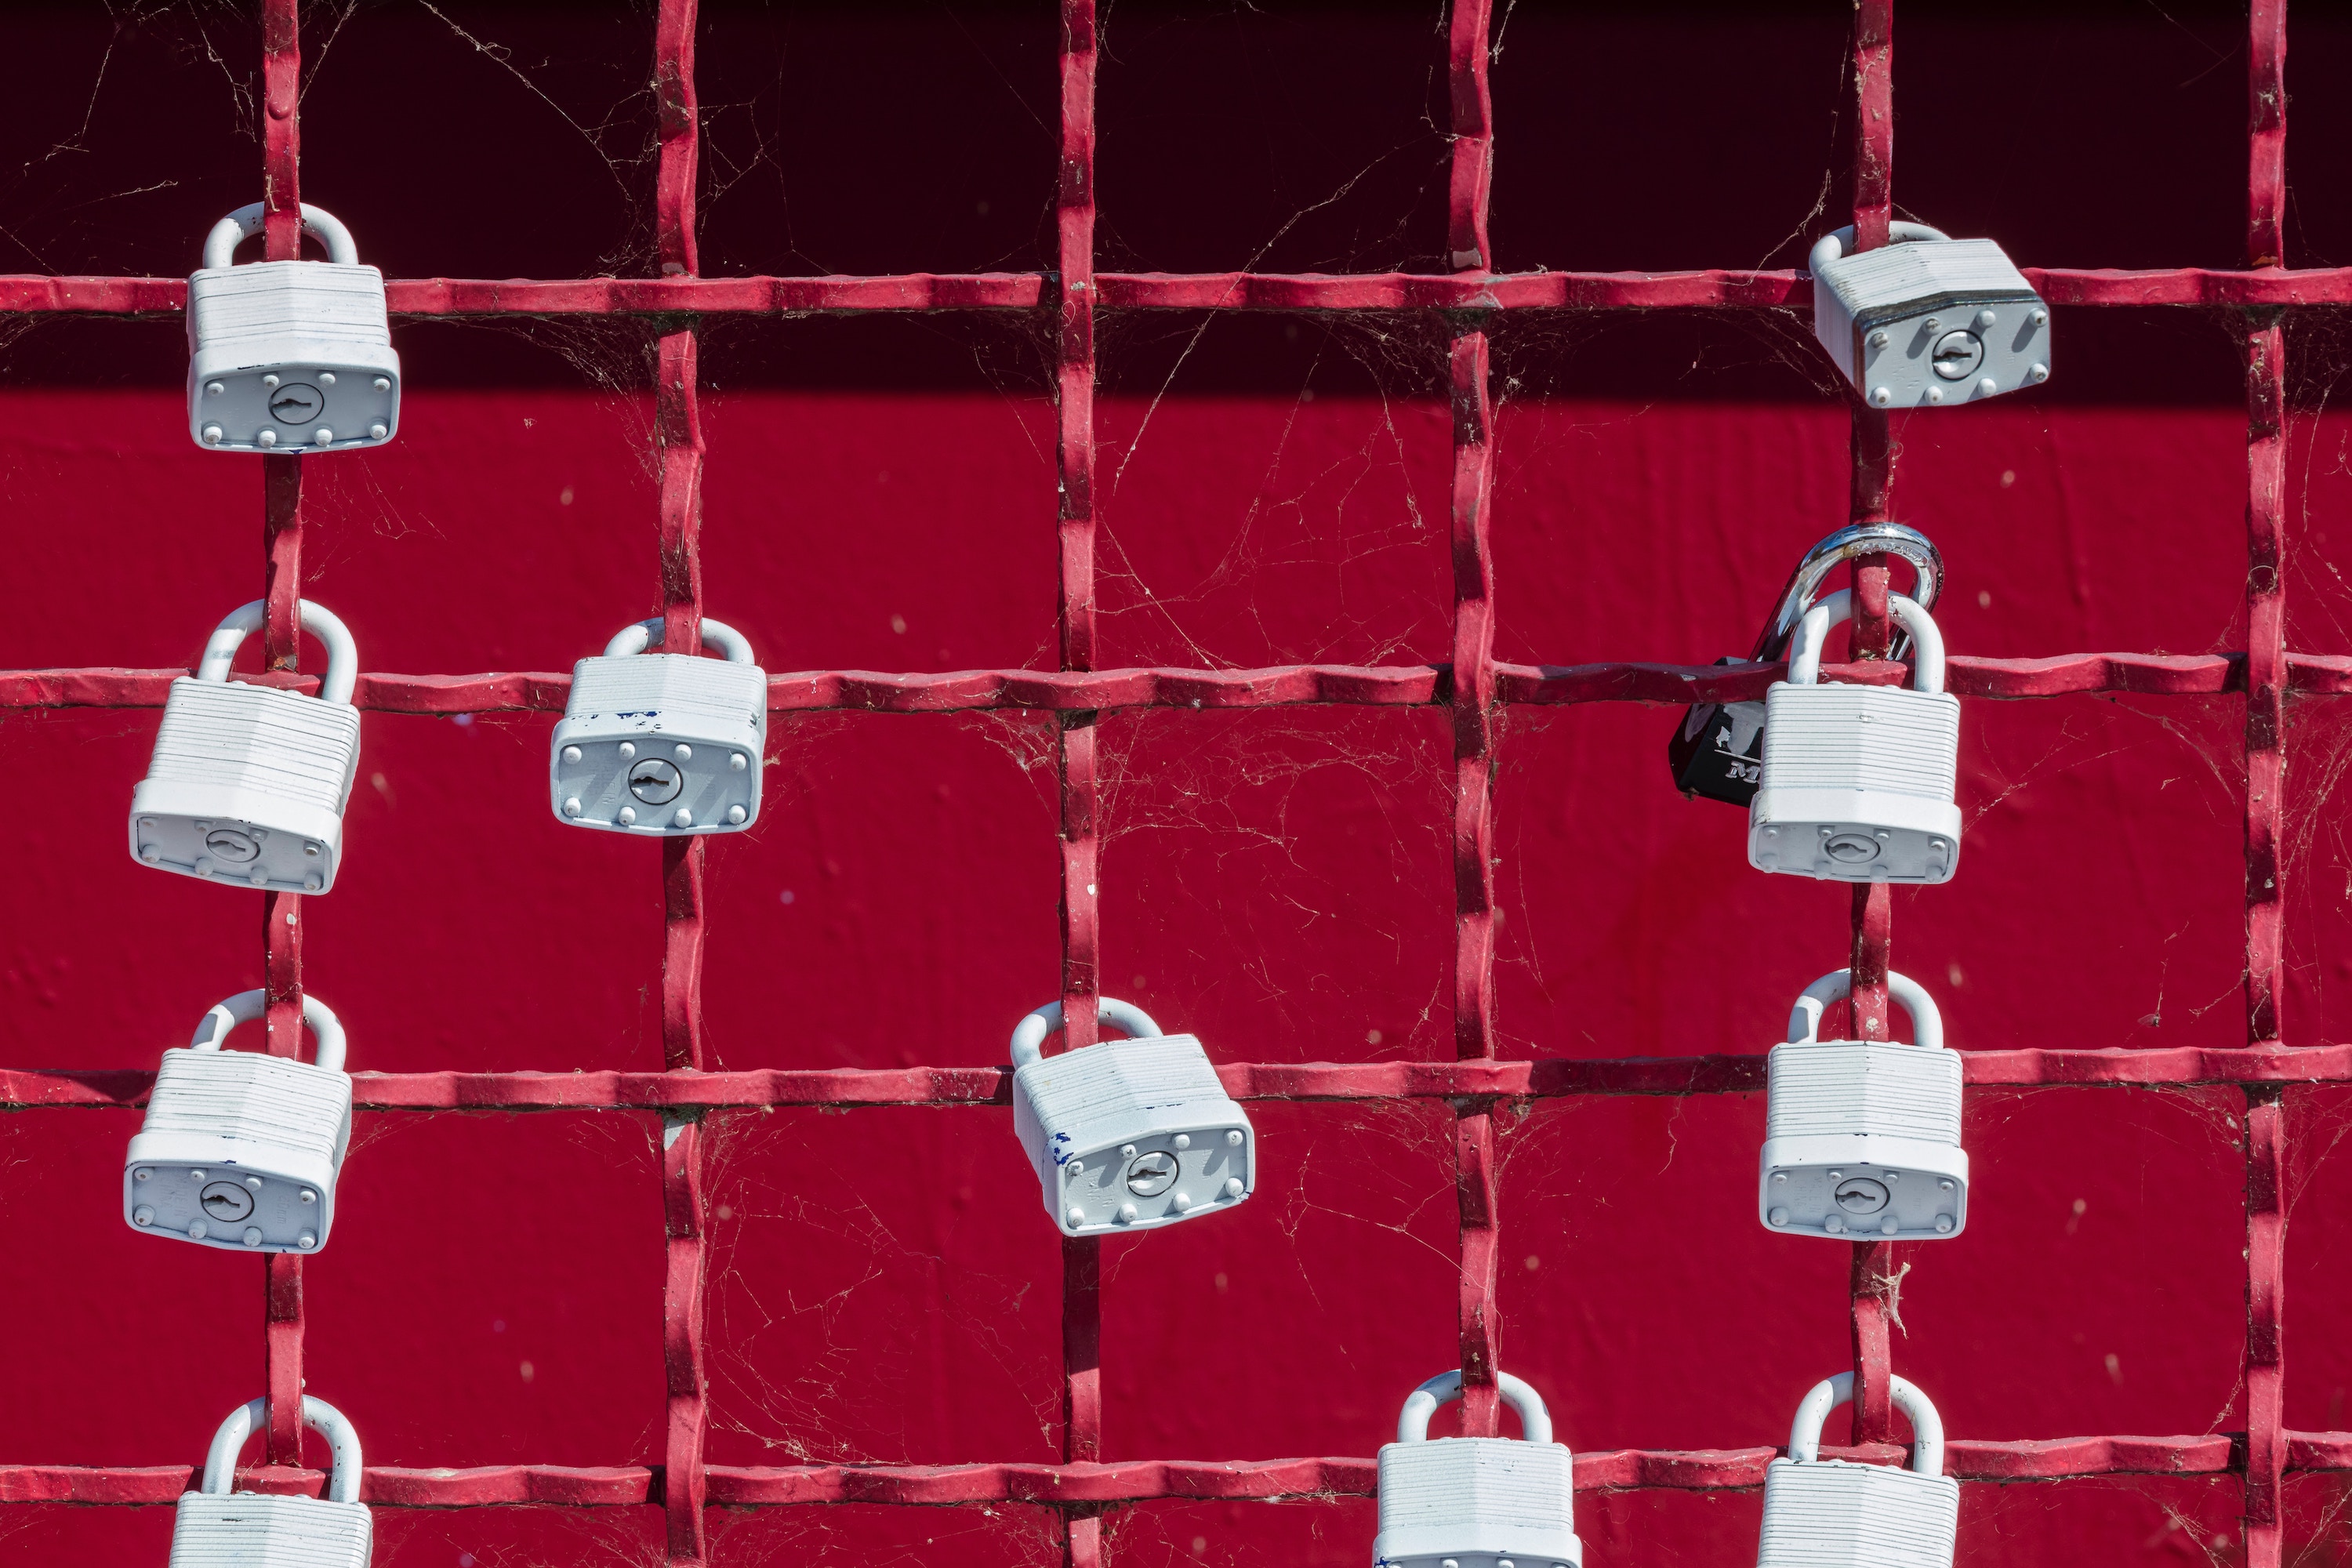 Locks on red fence